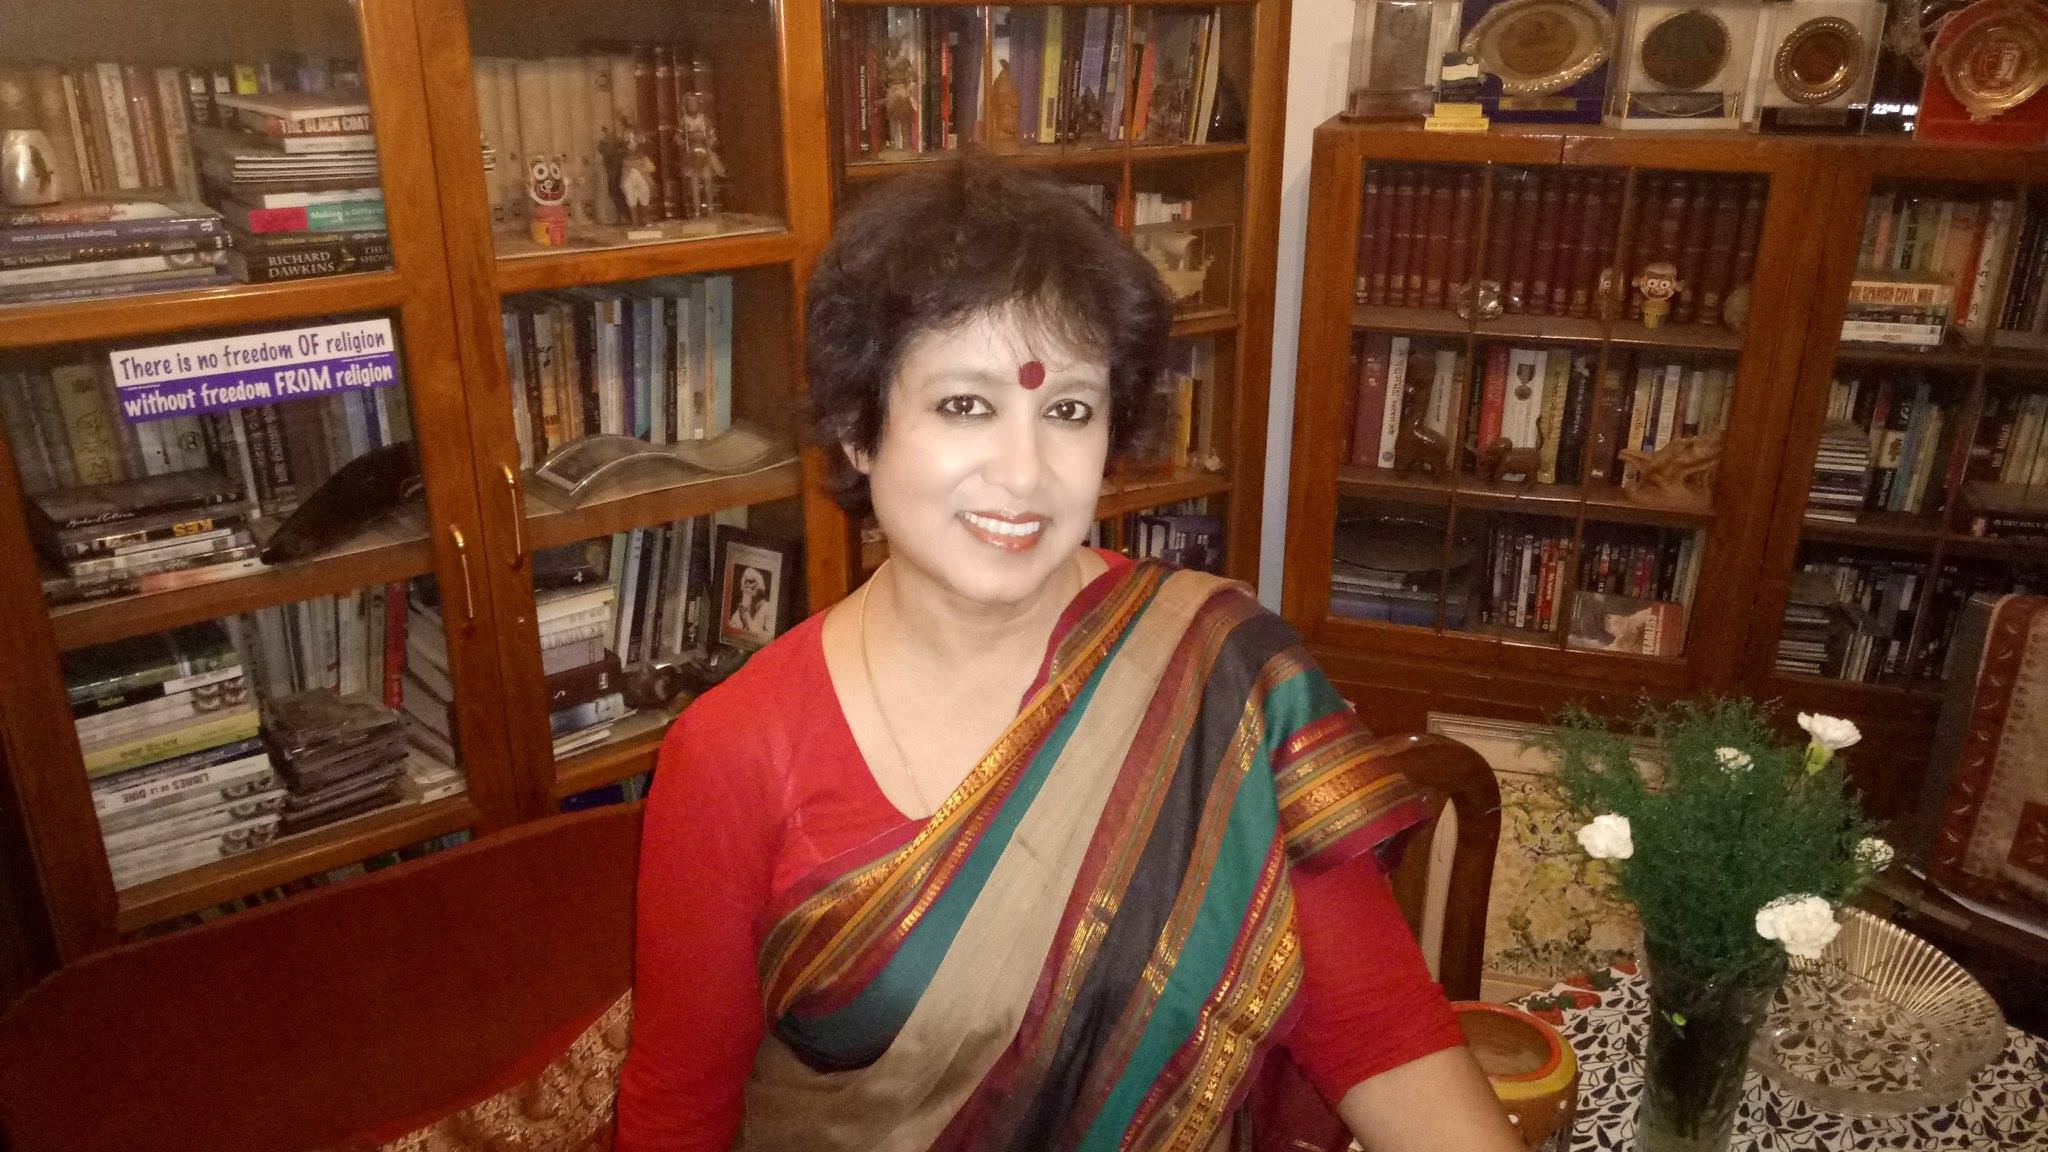 तस्लीमा नसरीन